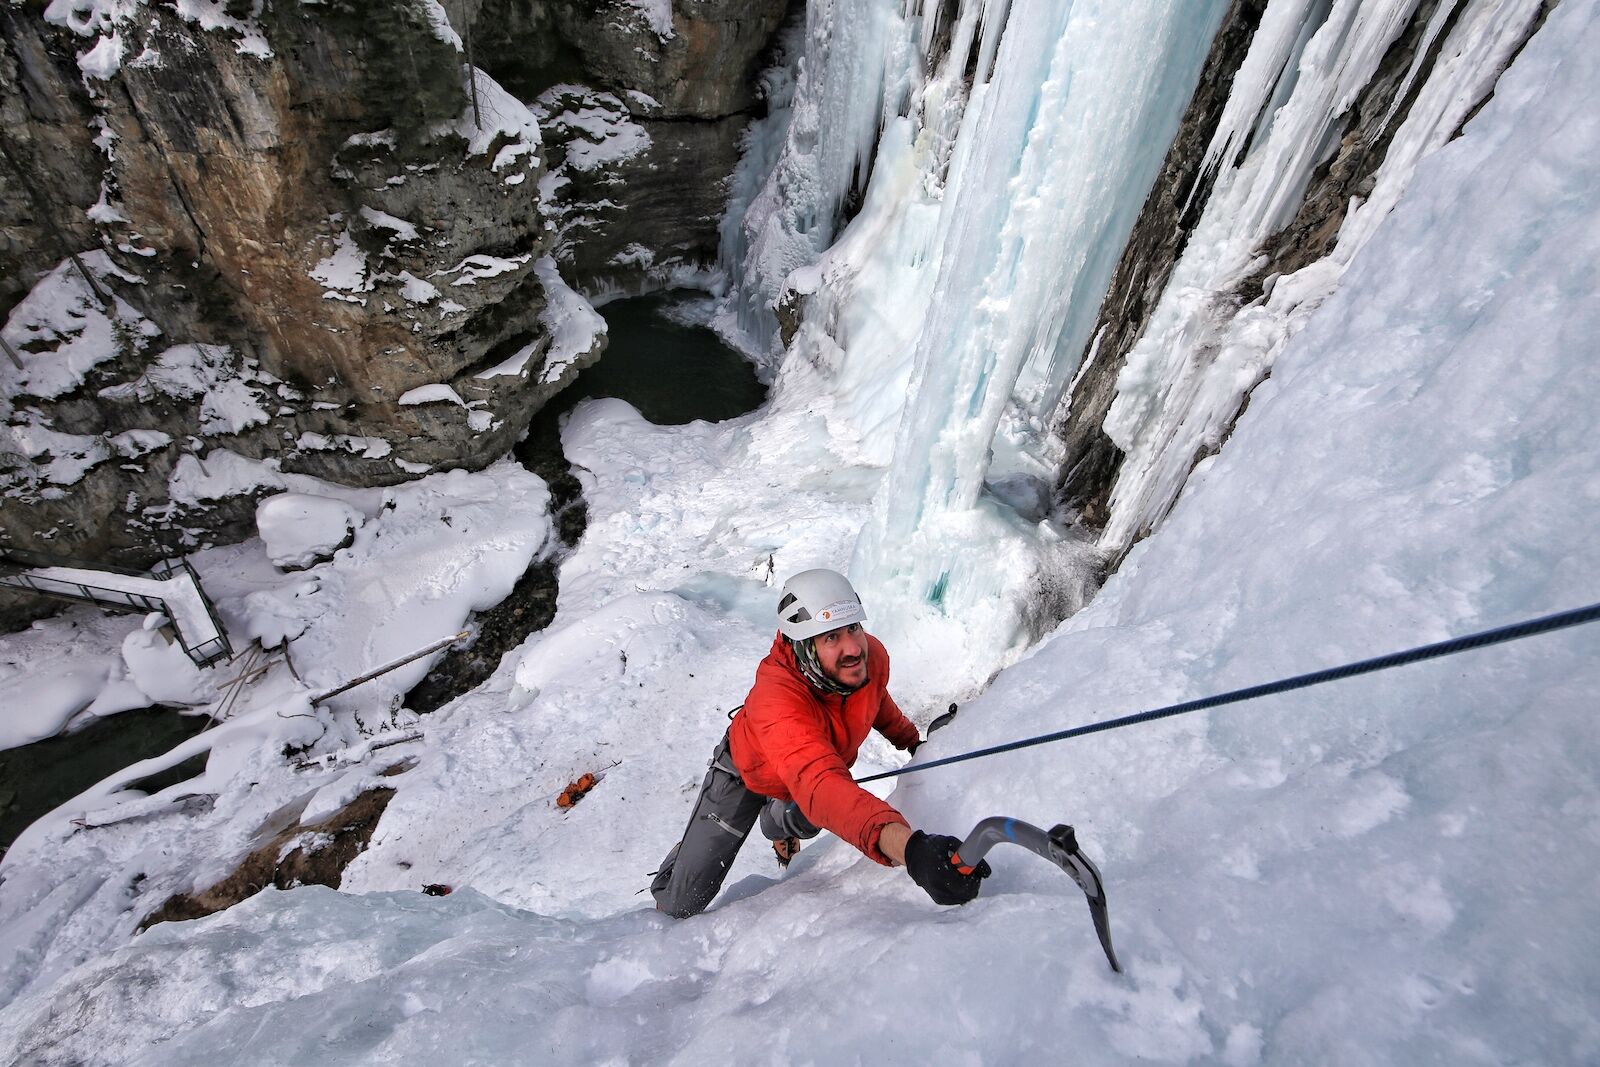 Ice climbing up a ravine